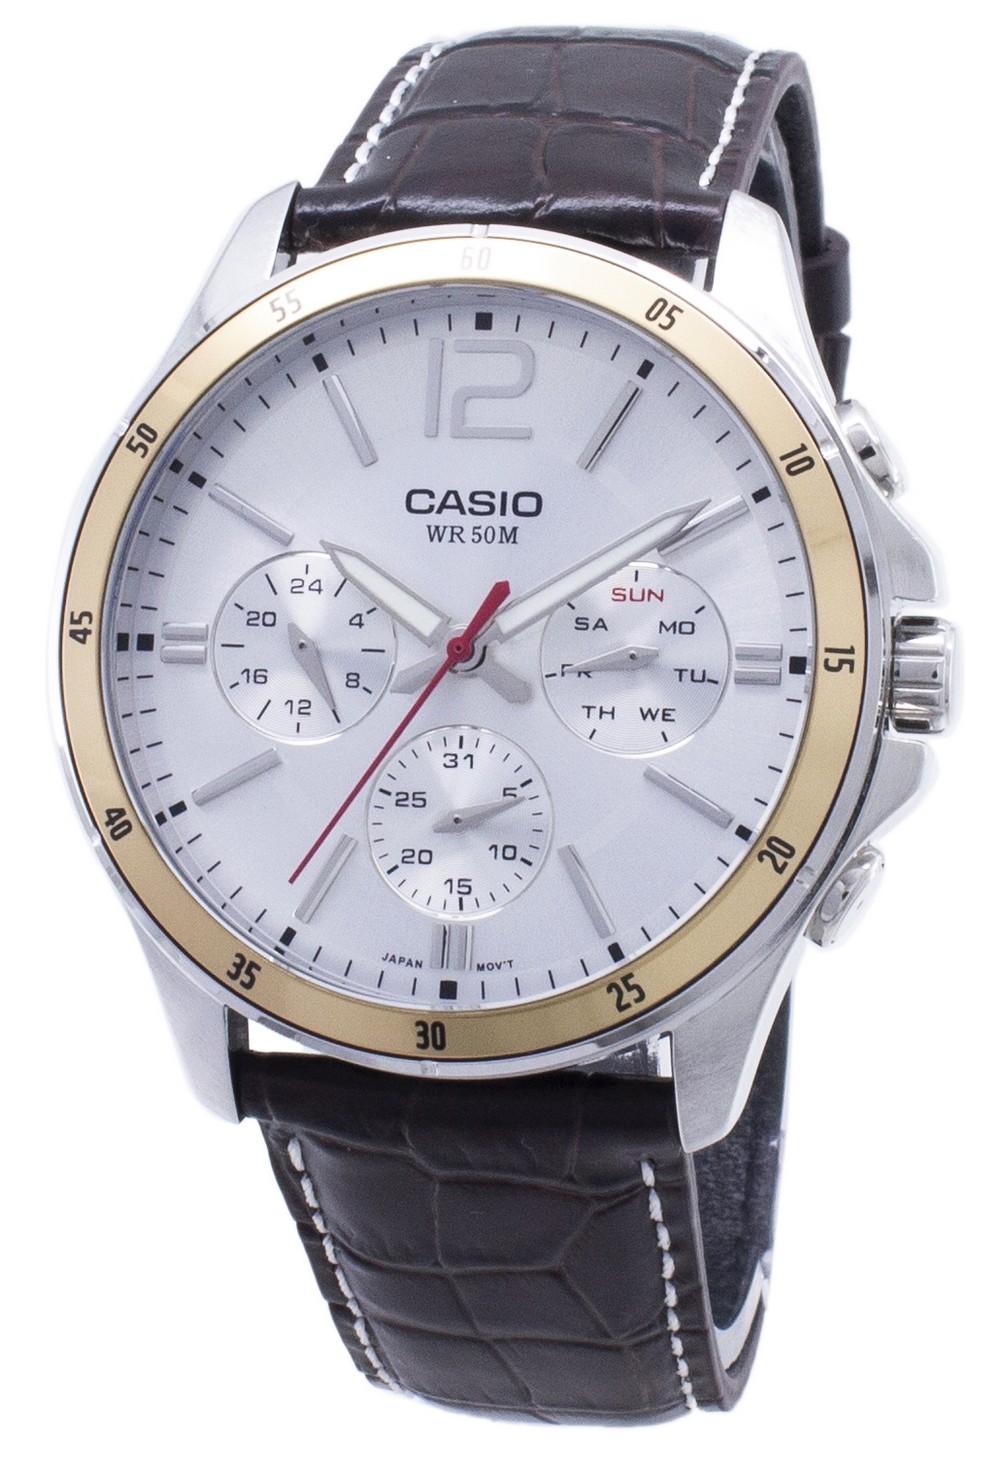 Casio Enticer MTP-1374L-7AV MTP1374L-7AV Chronograph Analog Men's Watch